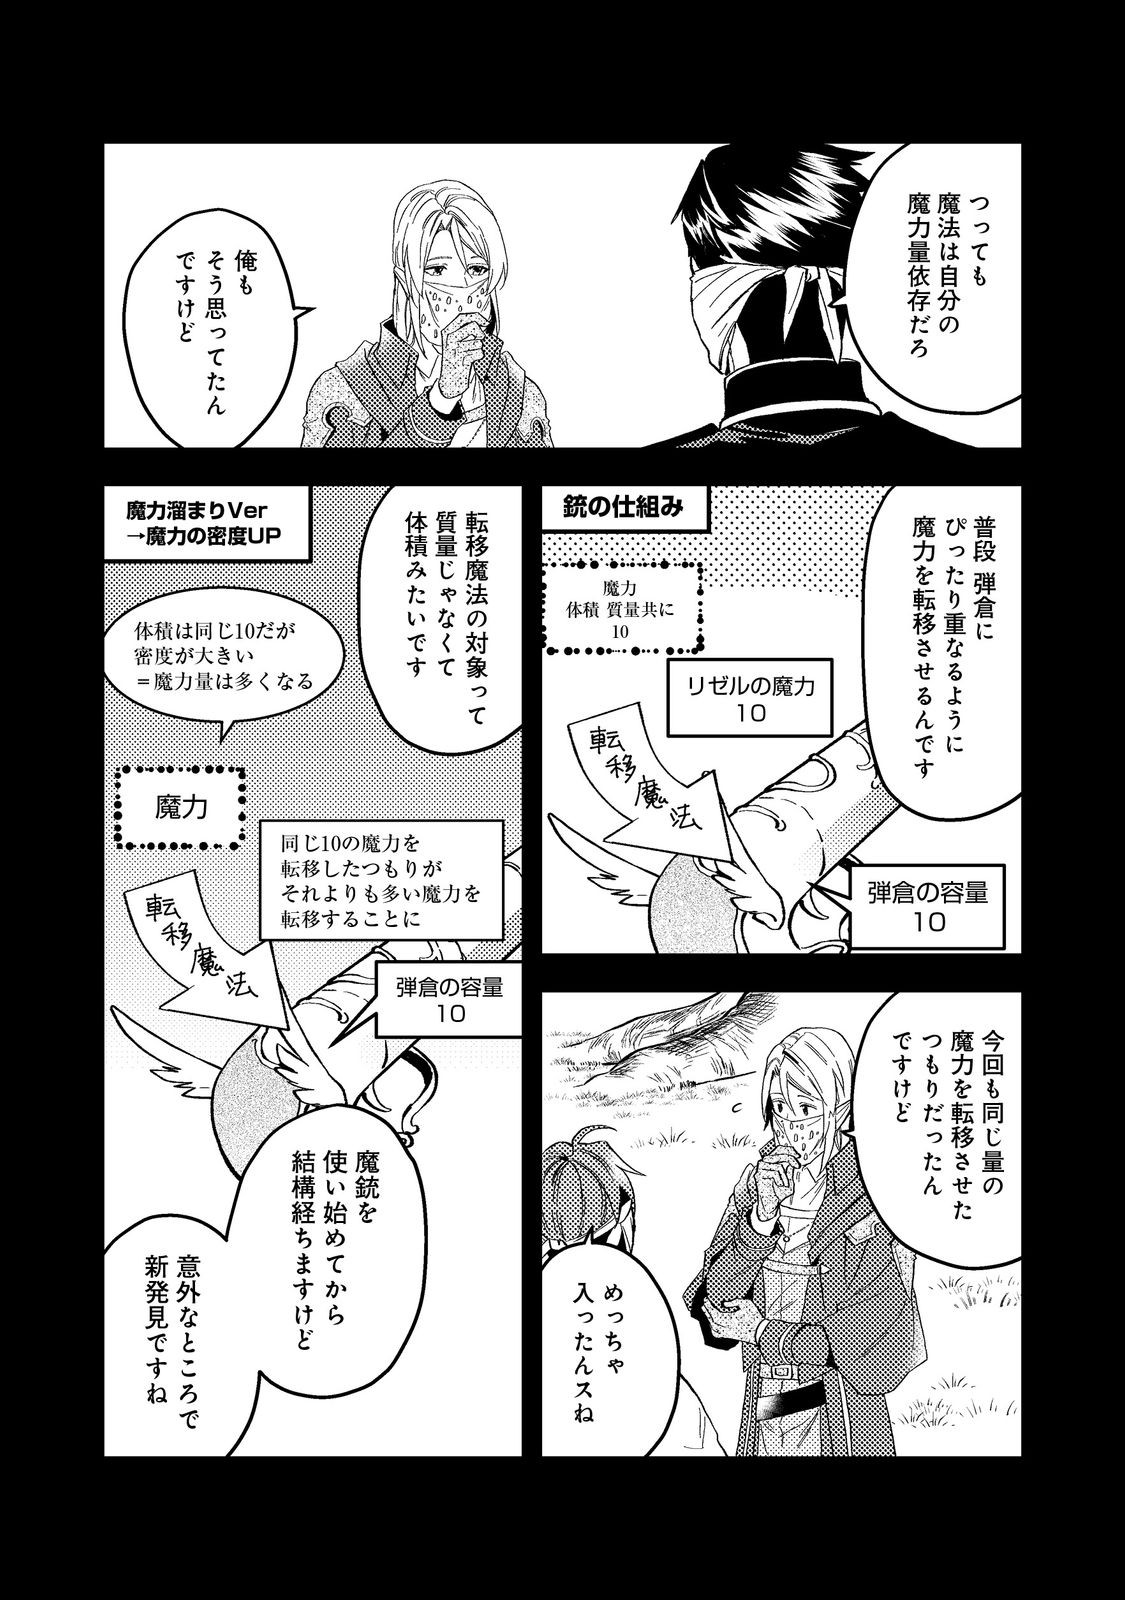 Odayaka Kizoku no Kyuuka no Susume - Chapter 43.2 - Page 2